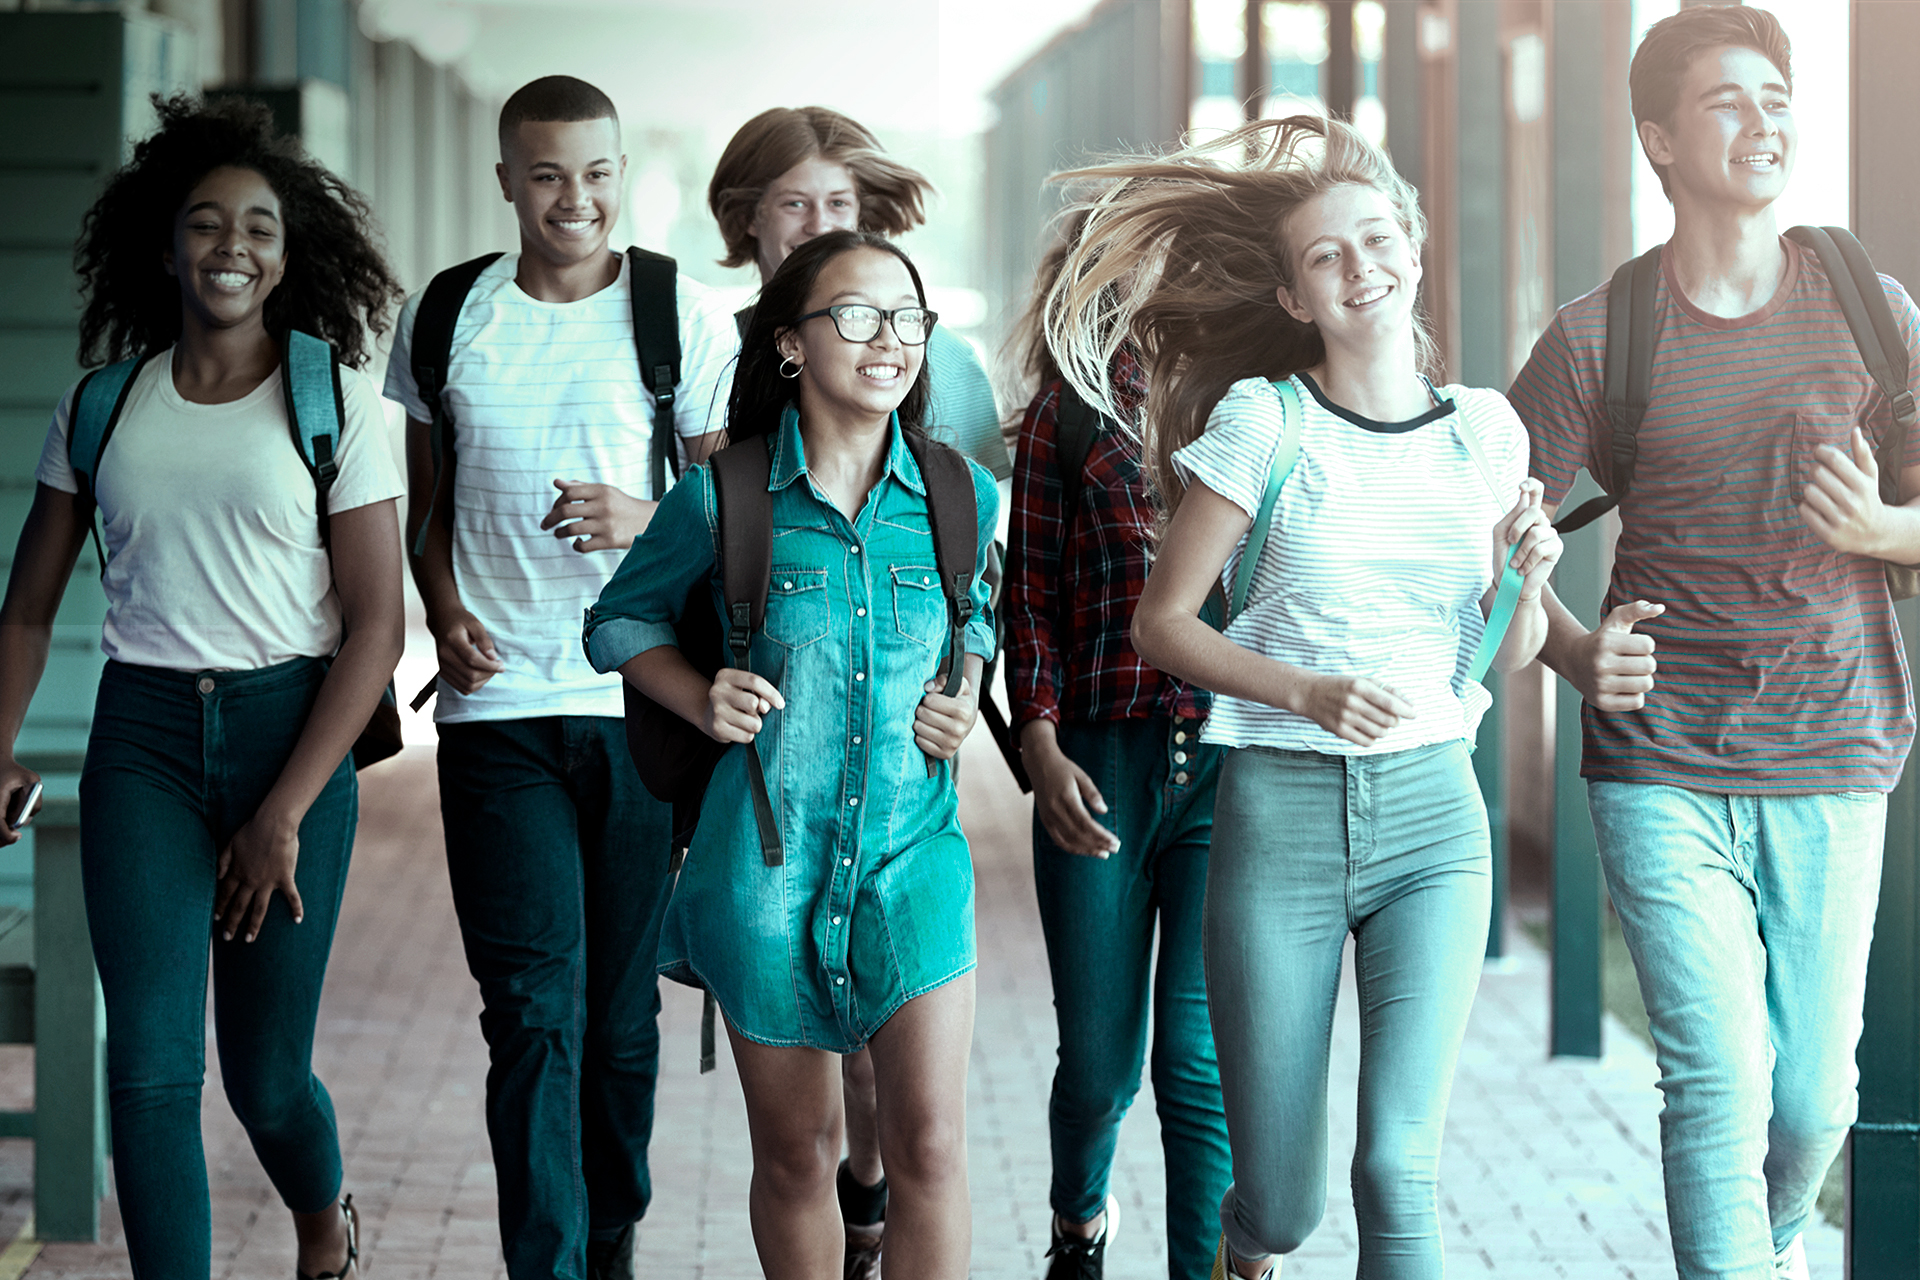 Teenager school kids running in high school hallway